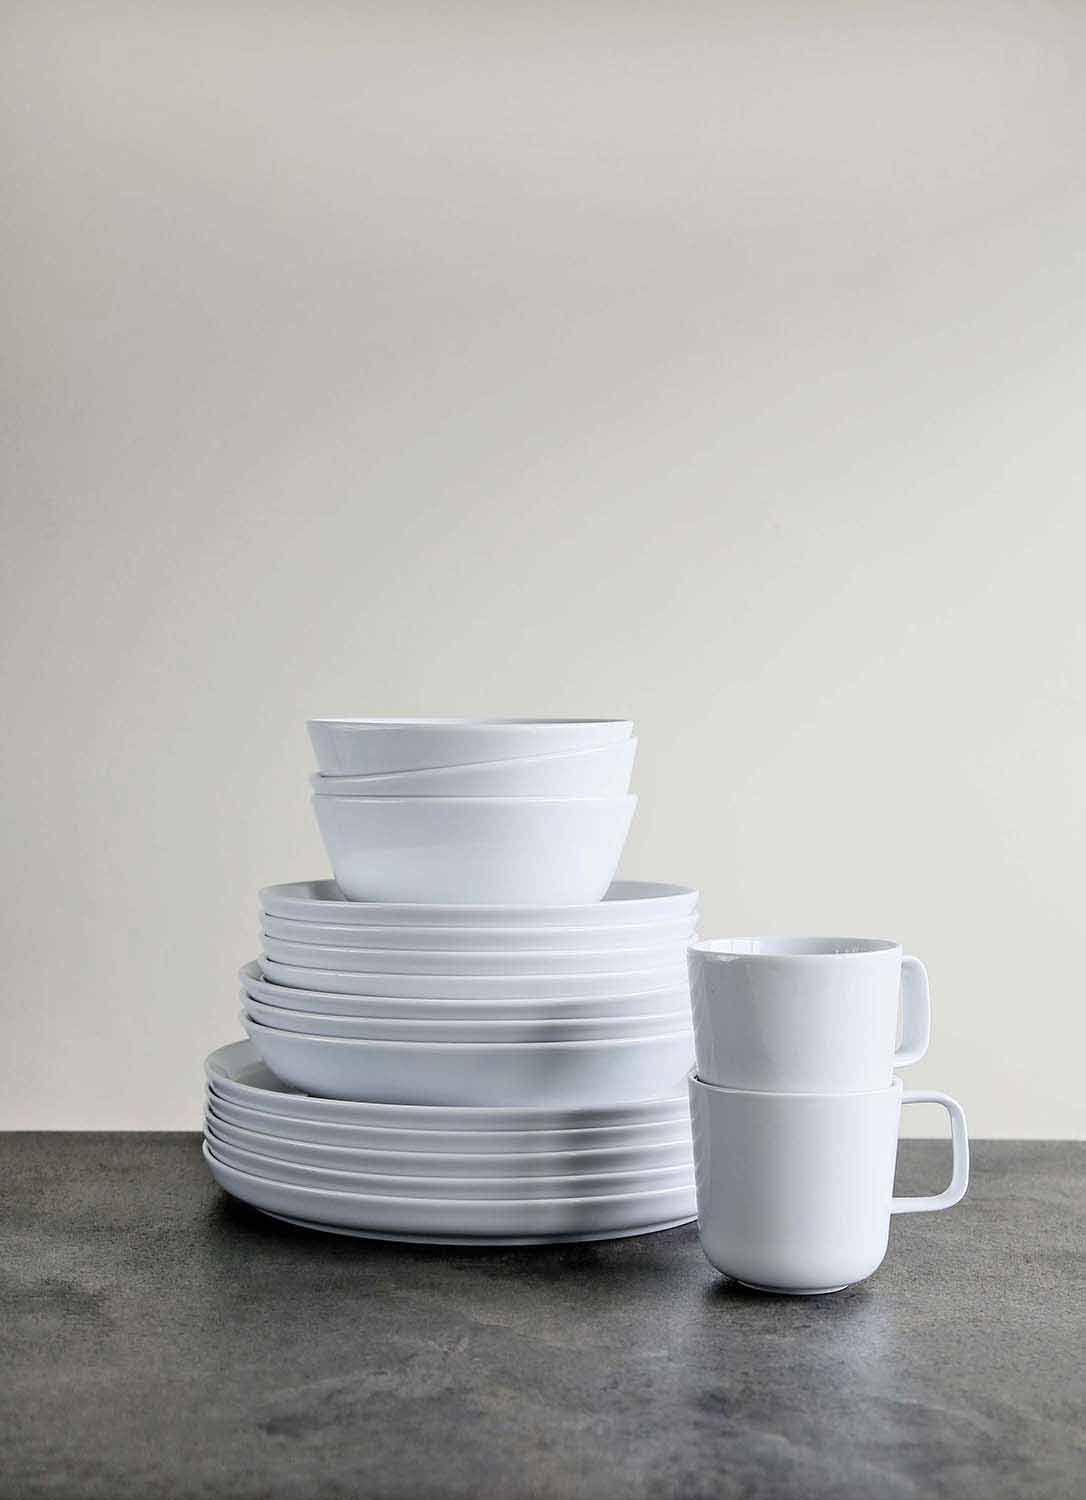 Piatti in porcellana con bordo pizzicato a mano, stoviglie, piatti bianchi,  ceramica -  Italia